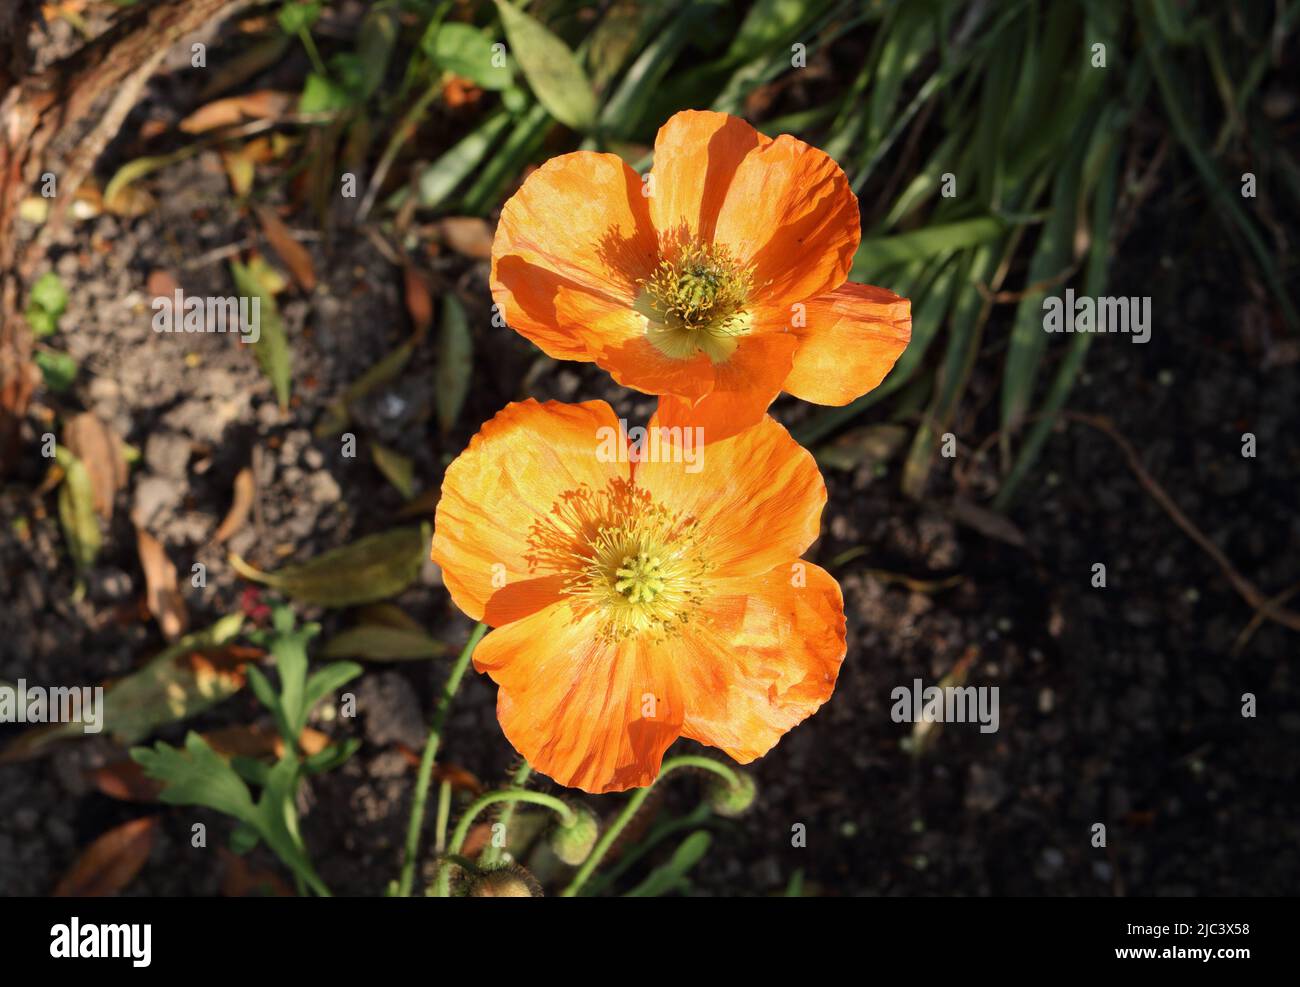 Papaver nudicaule, the Iceland poppy. Orange flower Stock Photo